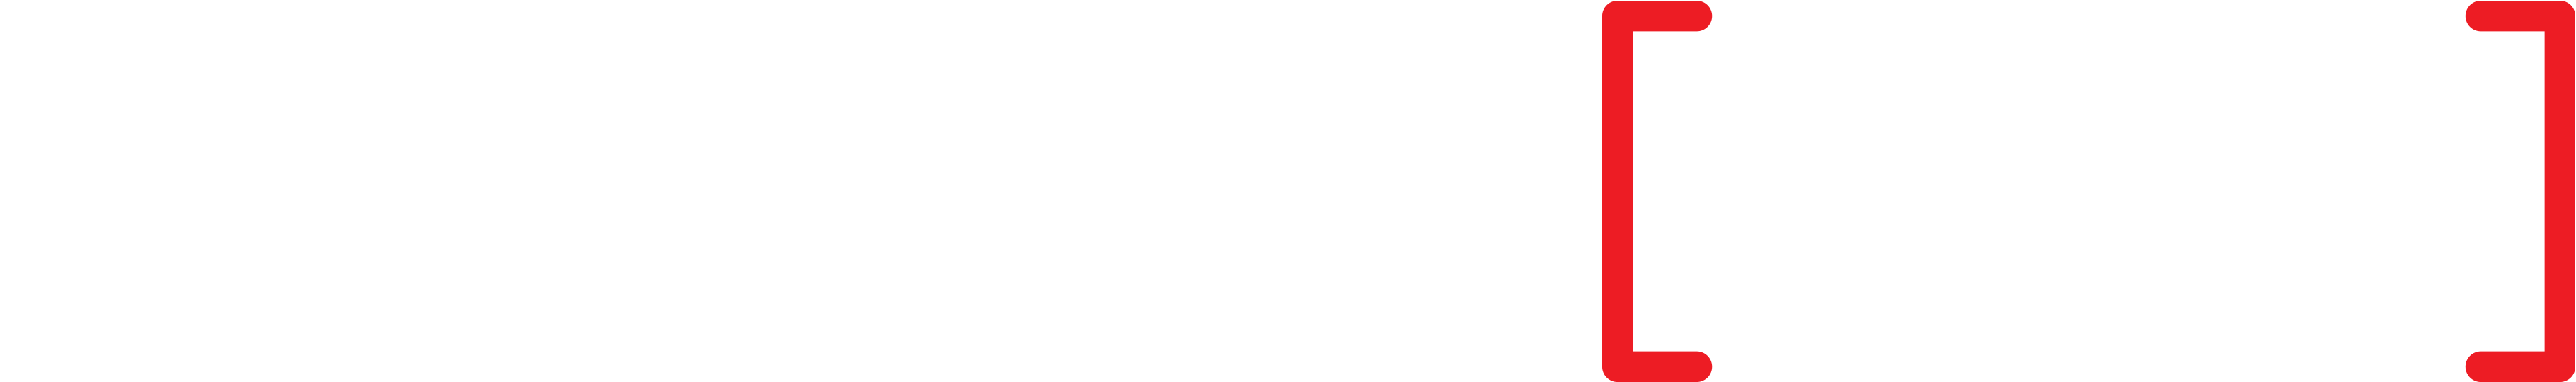 //striveav.com/wp-content/uploads/2020/10/logo.png